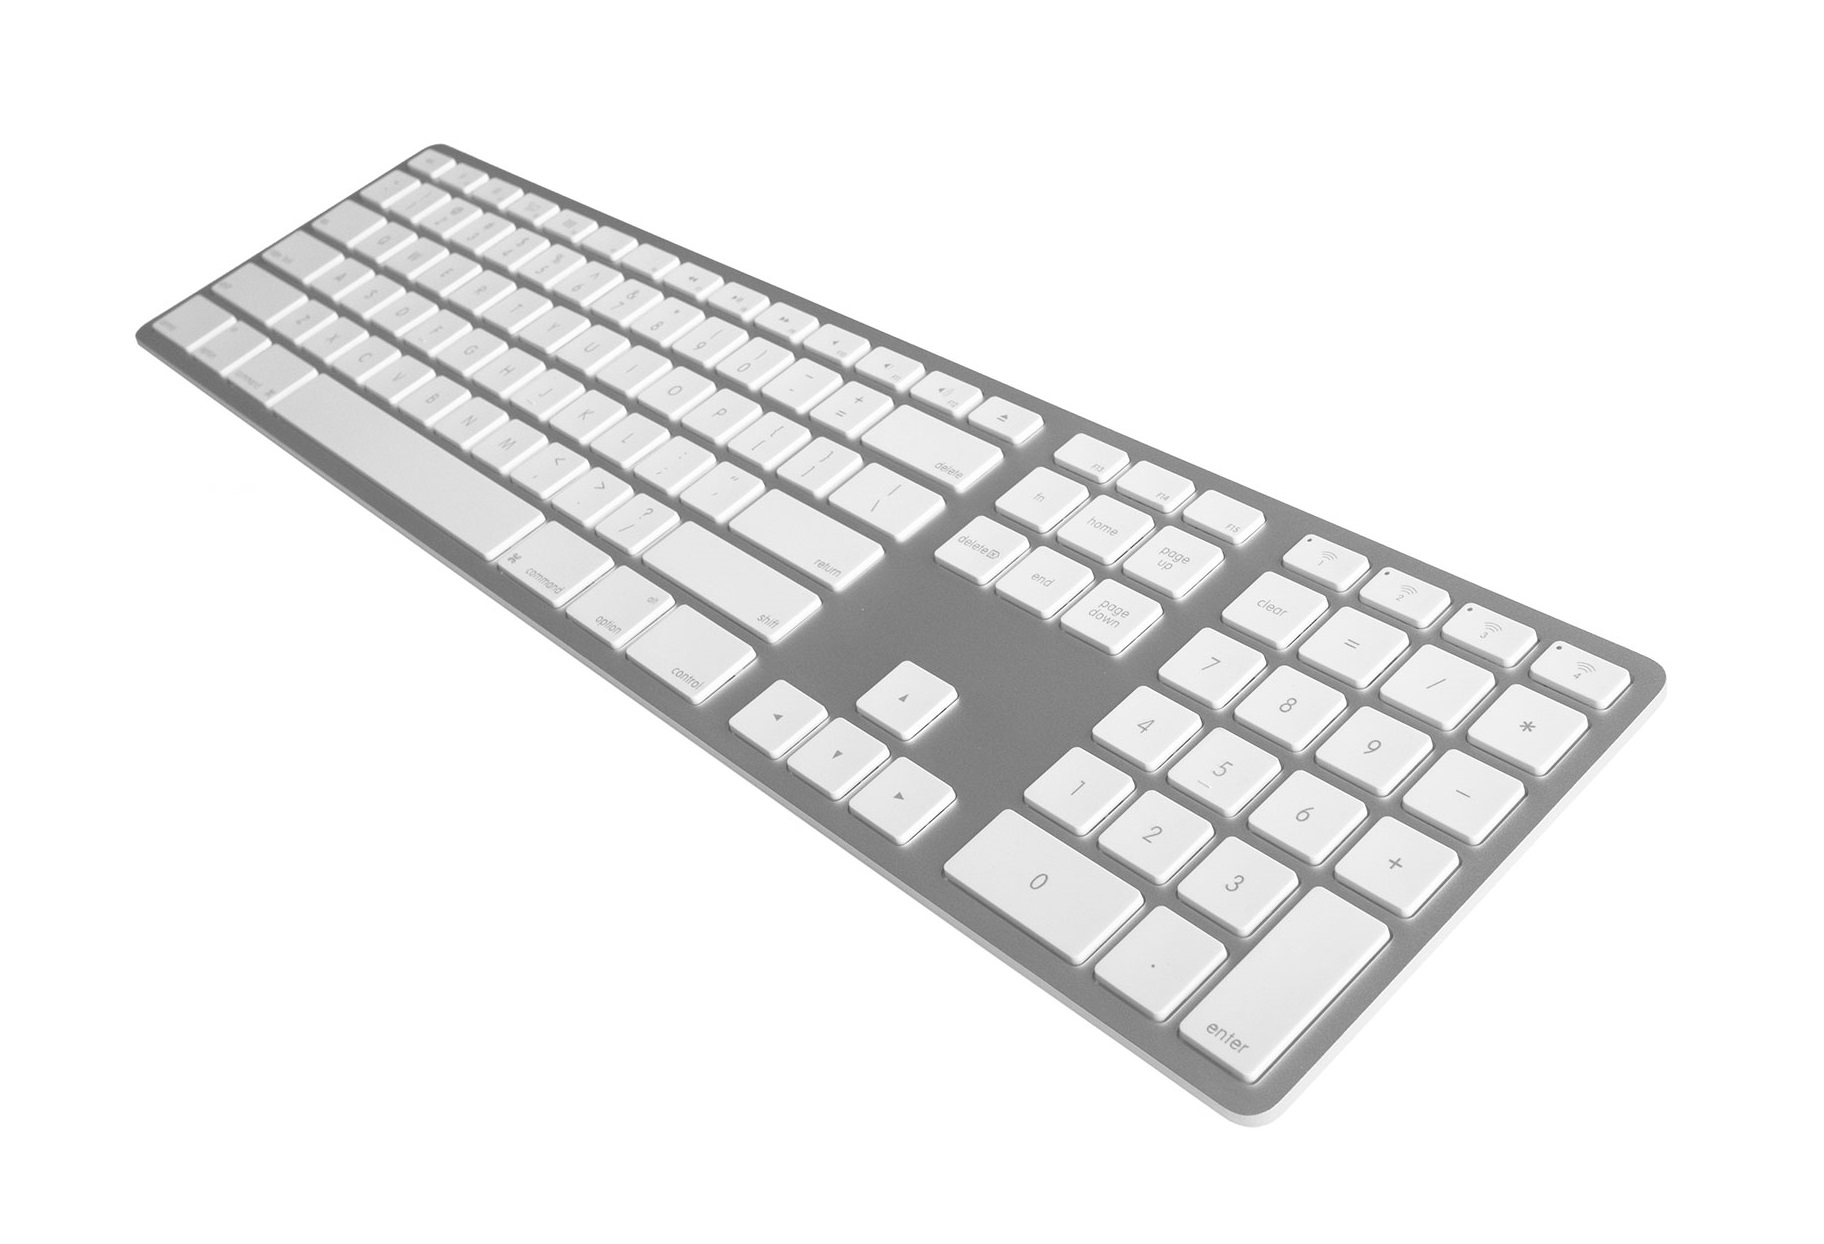 JENIMAGE FK418BTSQ-US Layout ergonomische weiss Tastatur, silber